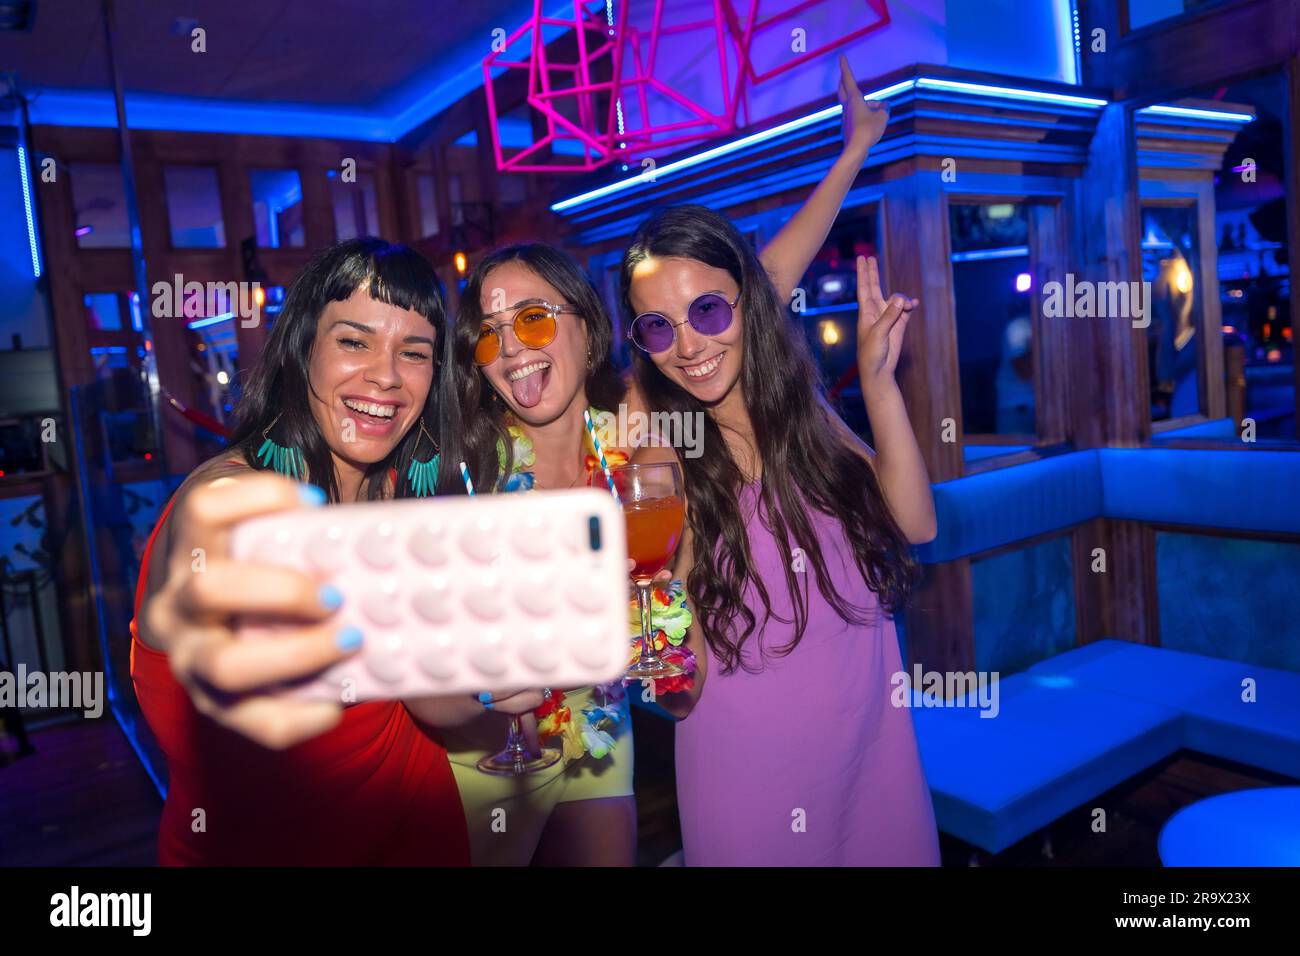 Des amis souriants avec des verres d'alcool dans une boîte de nuit prenant un selfie à une fête de nuit Banque D'Images